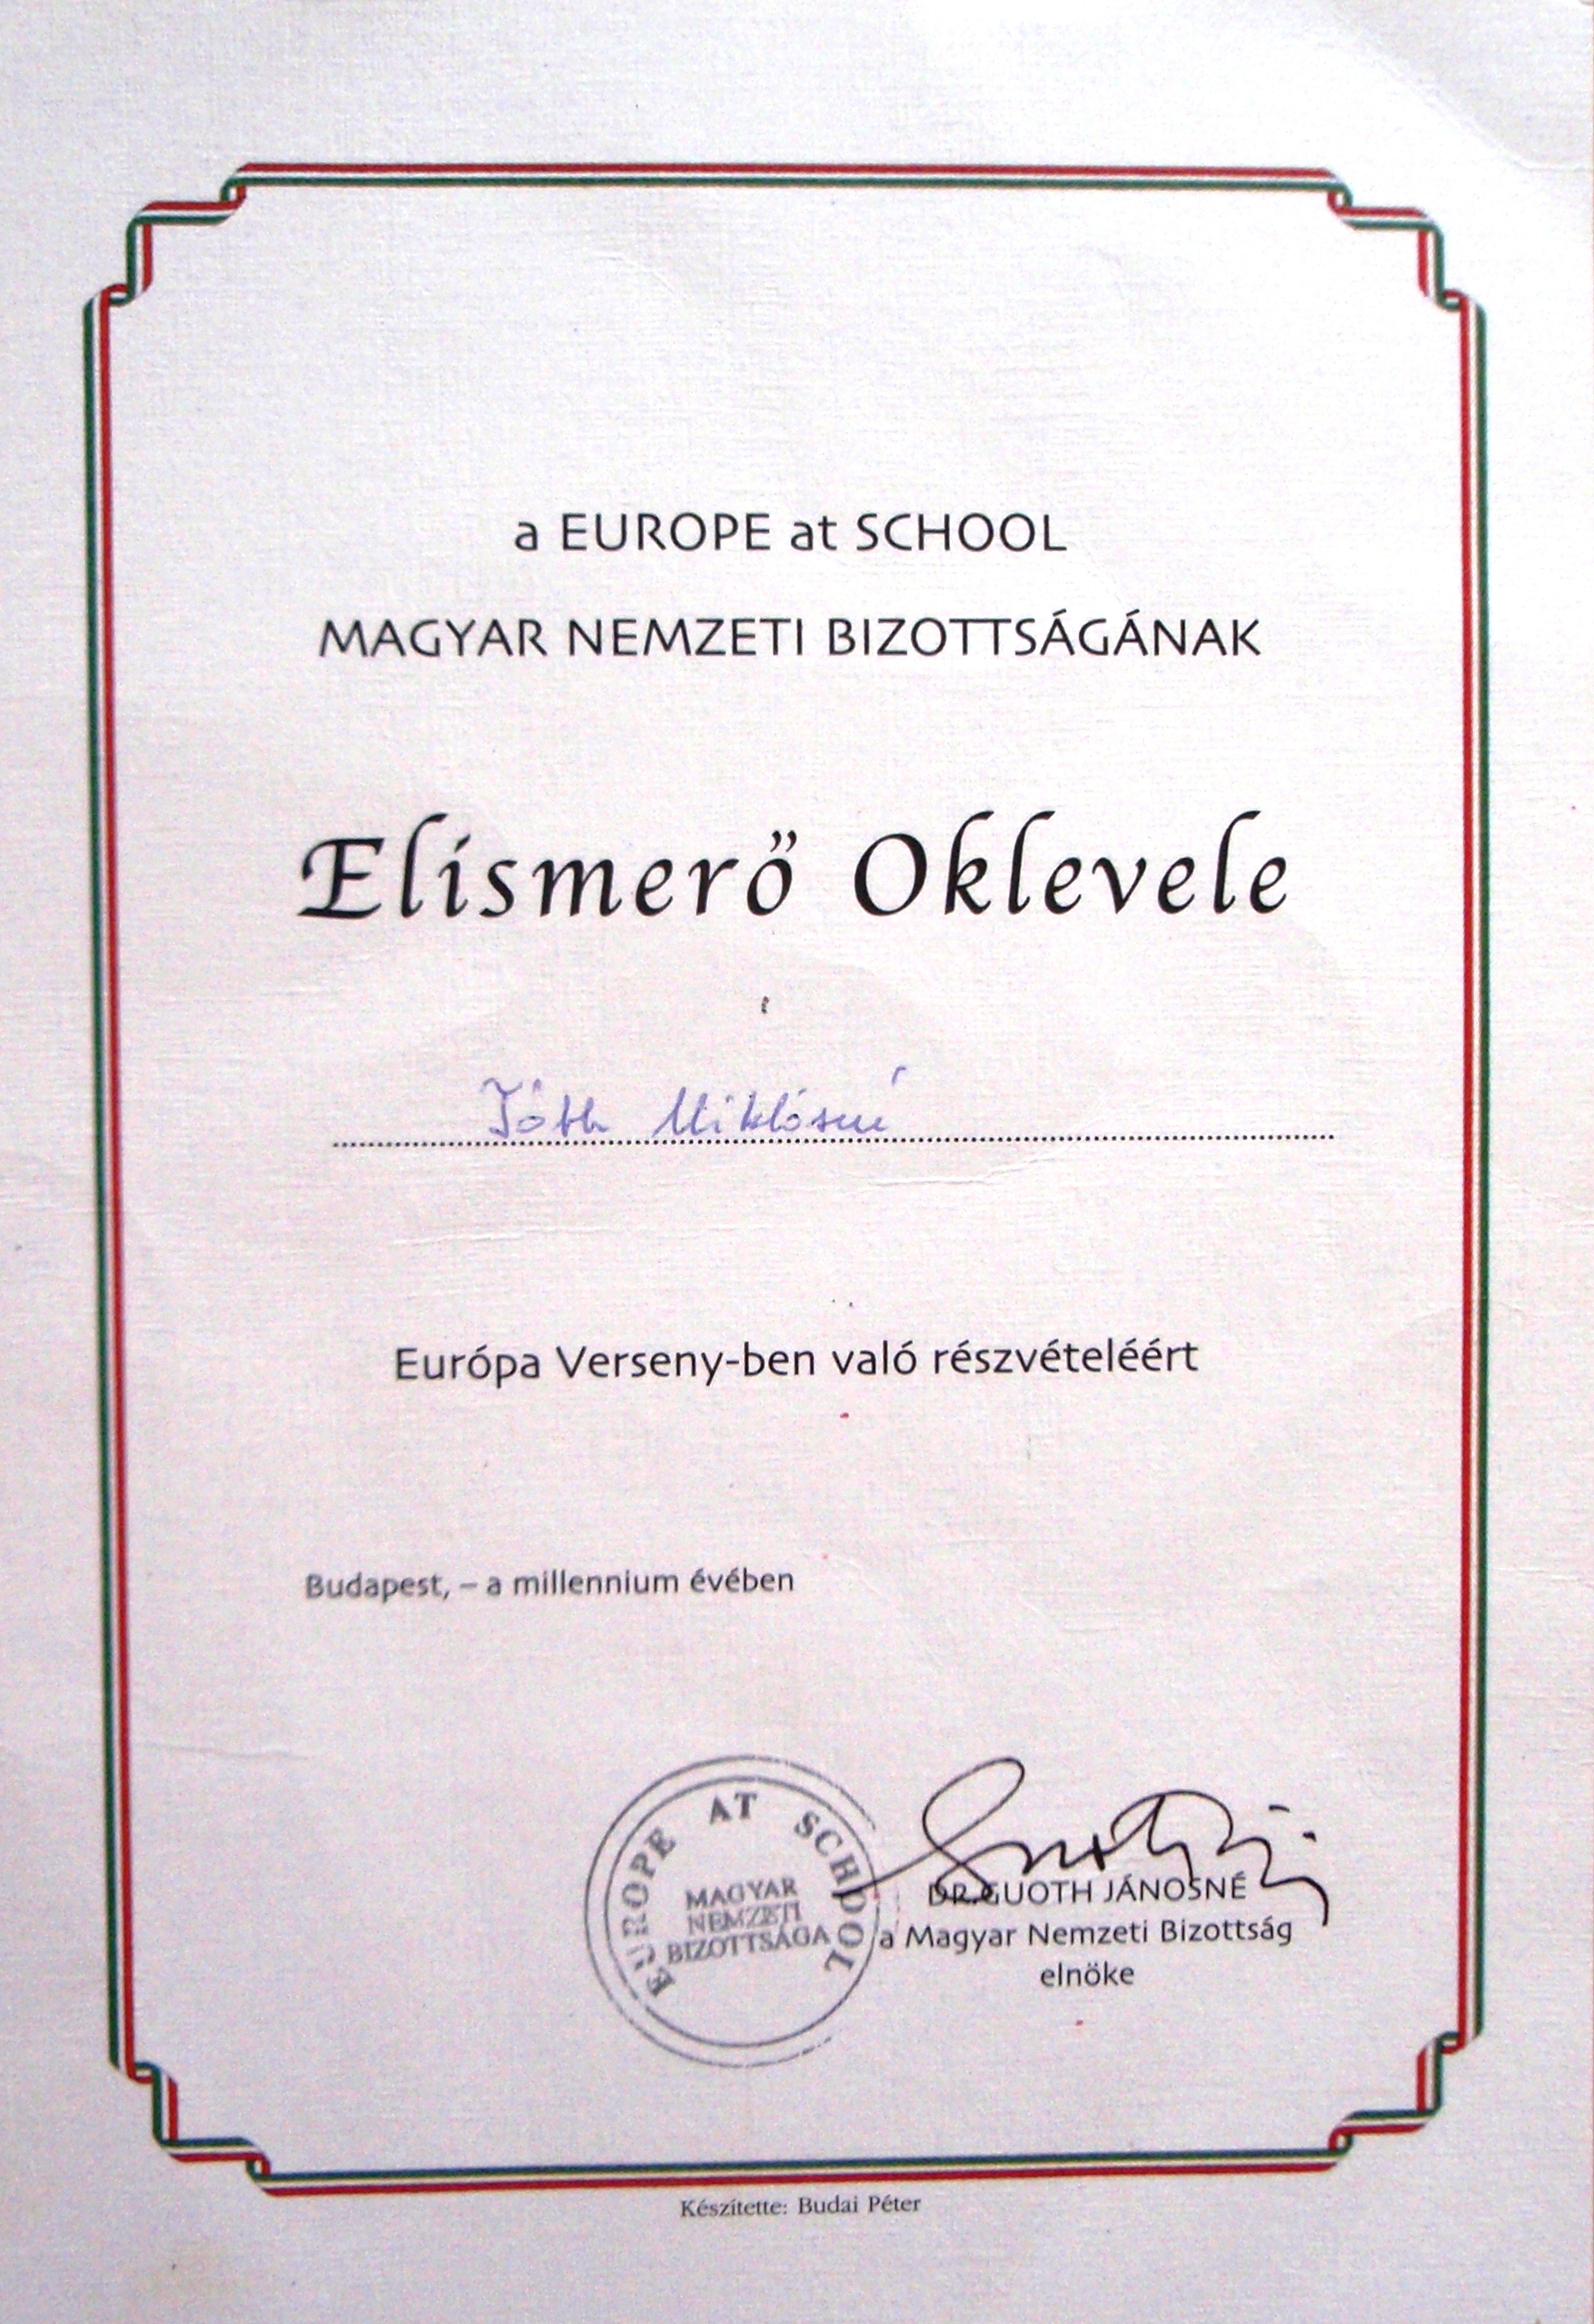 08. Europe At School- Elismerő Oklevél